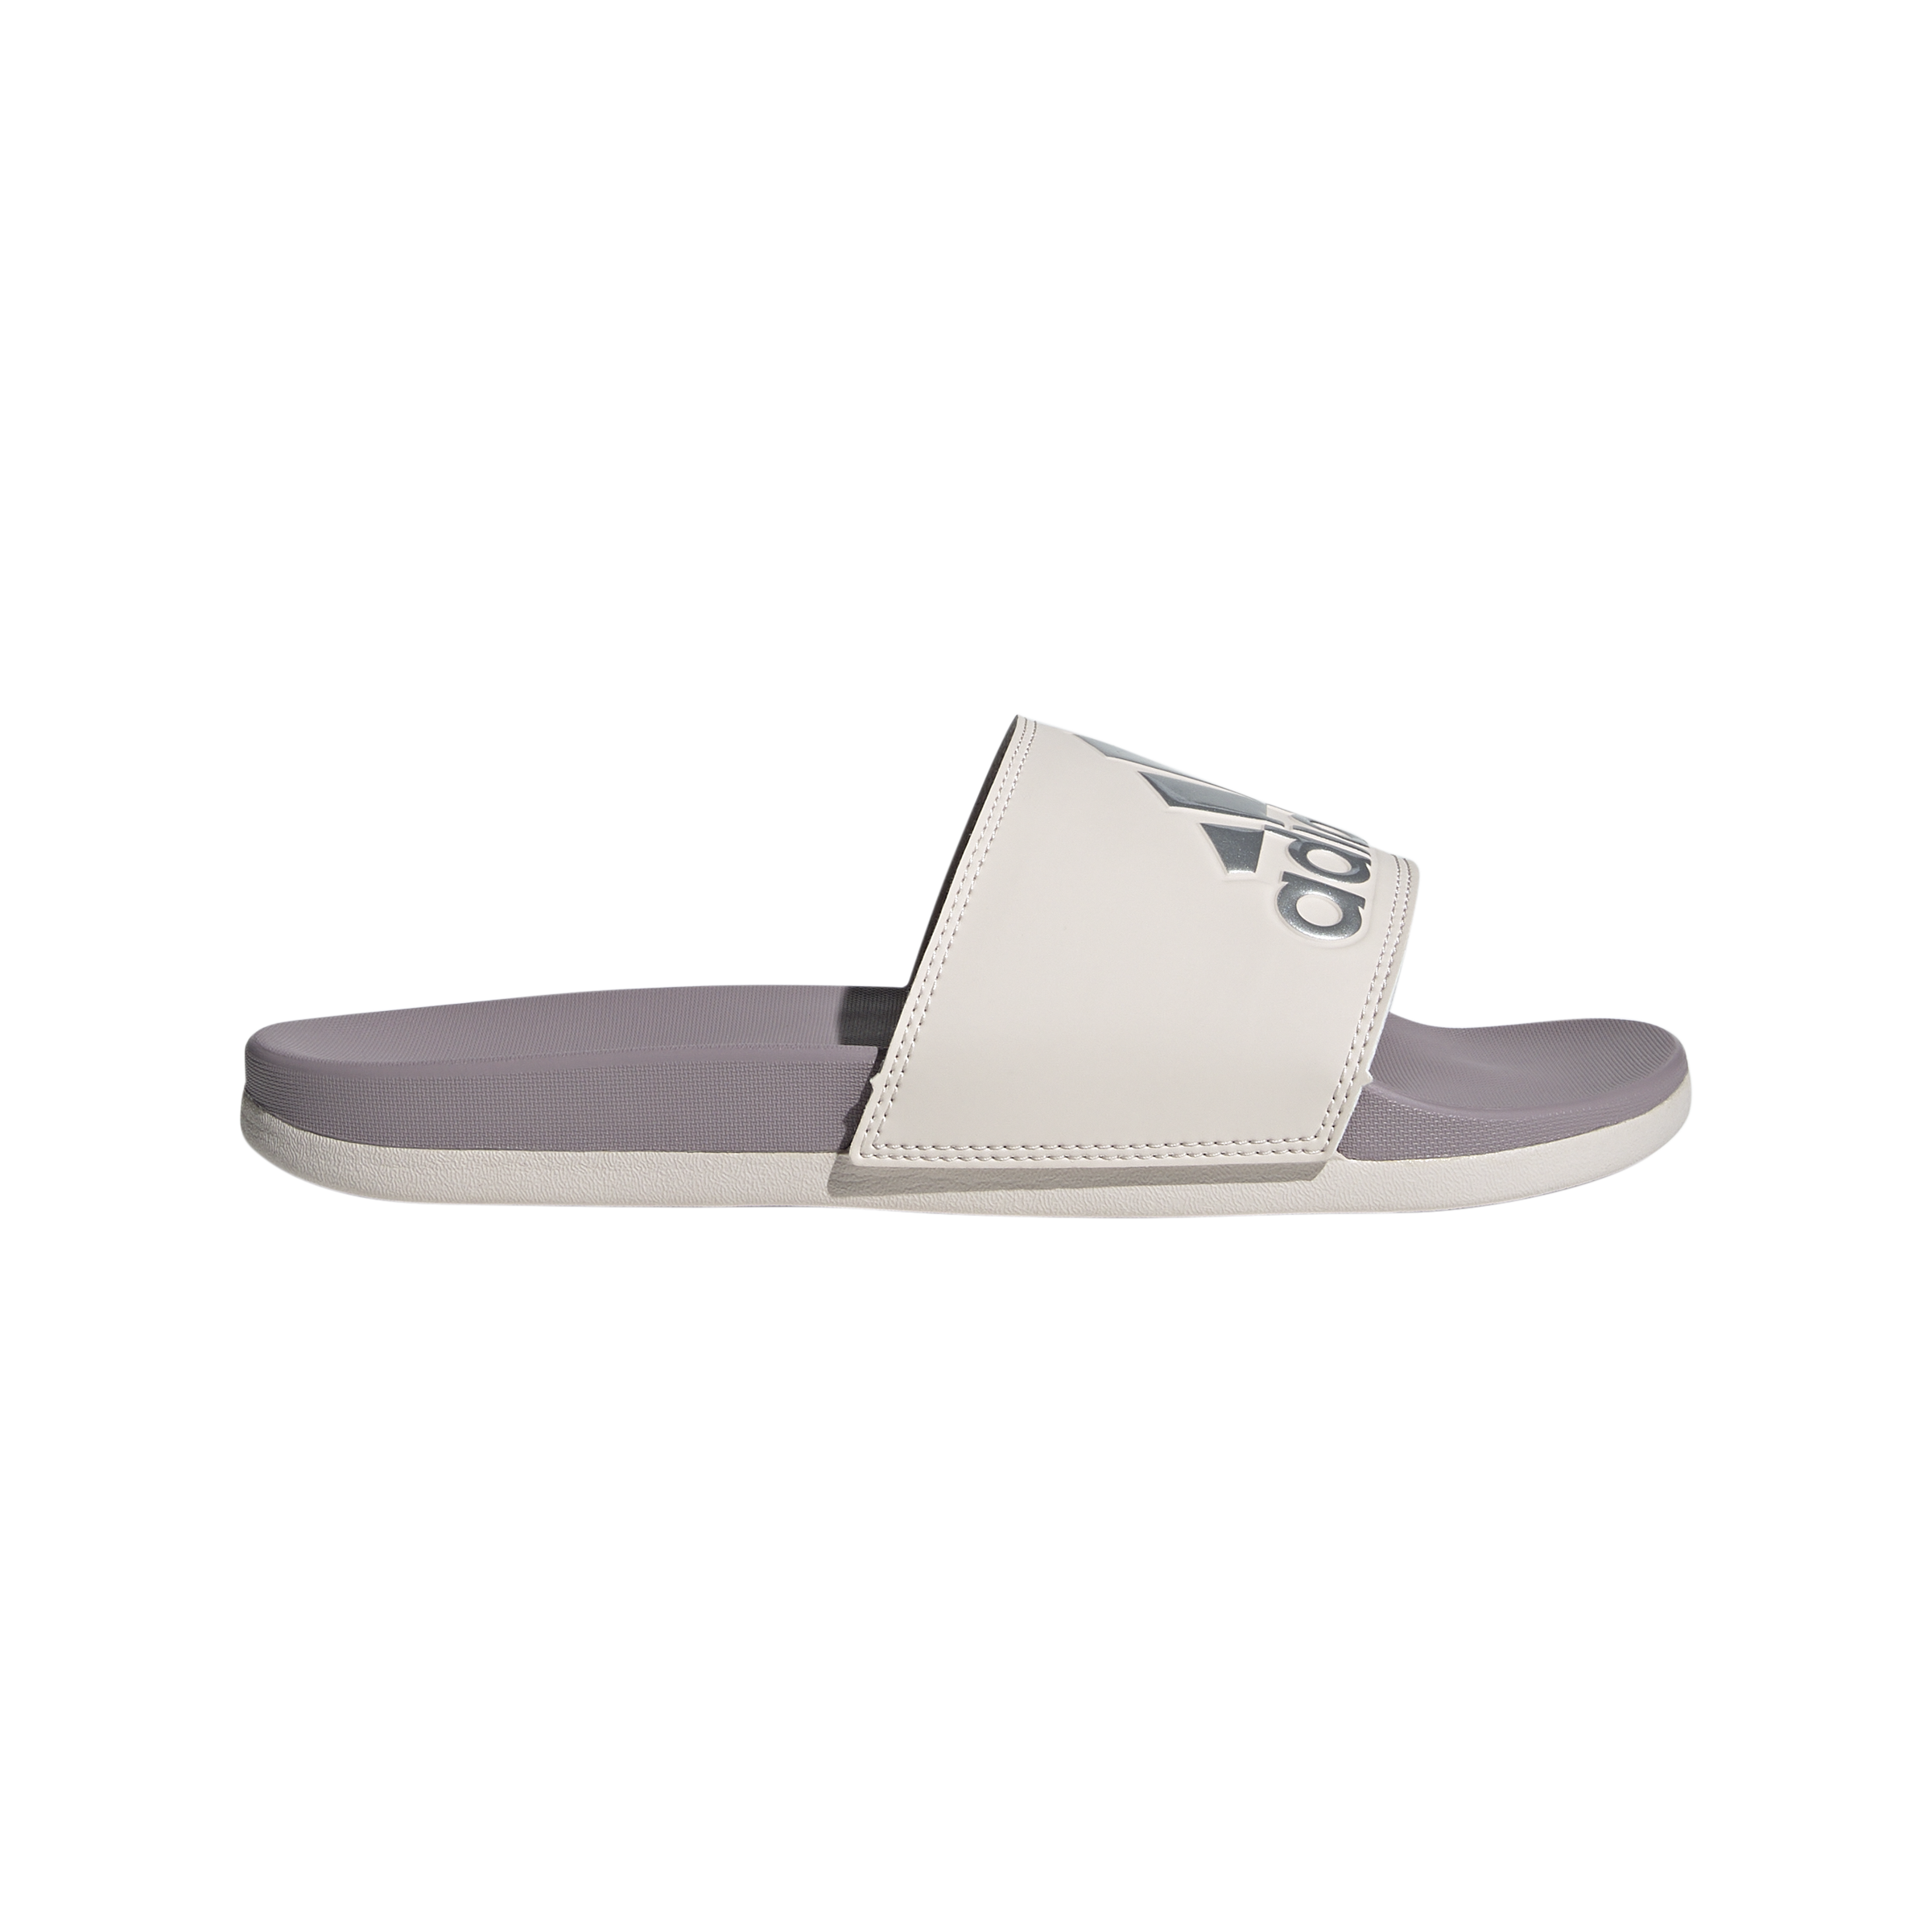 Adidas Adilette Comfort Women’s Slides IG1273